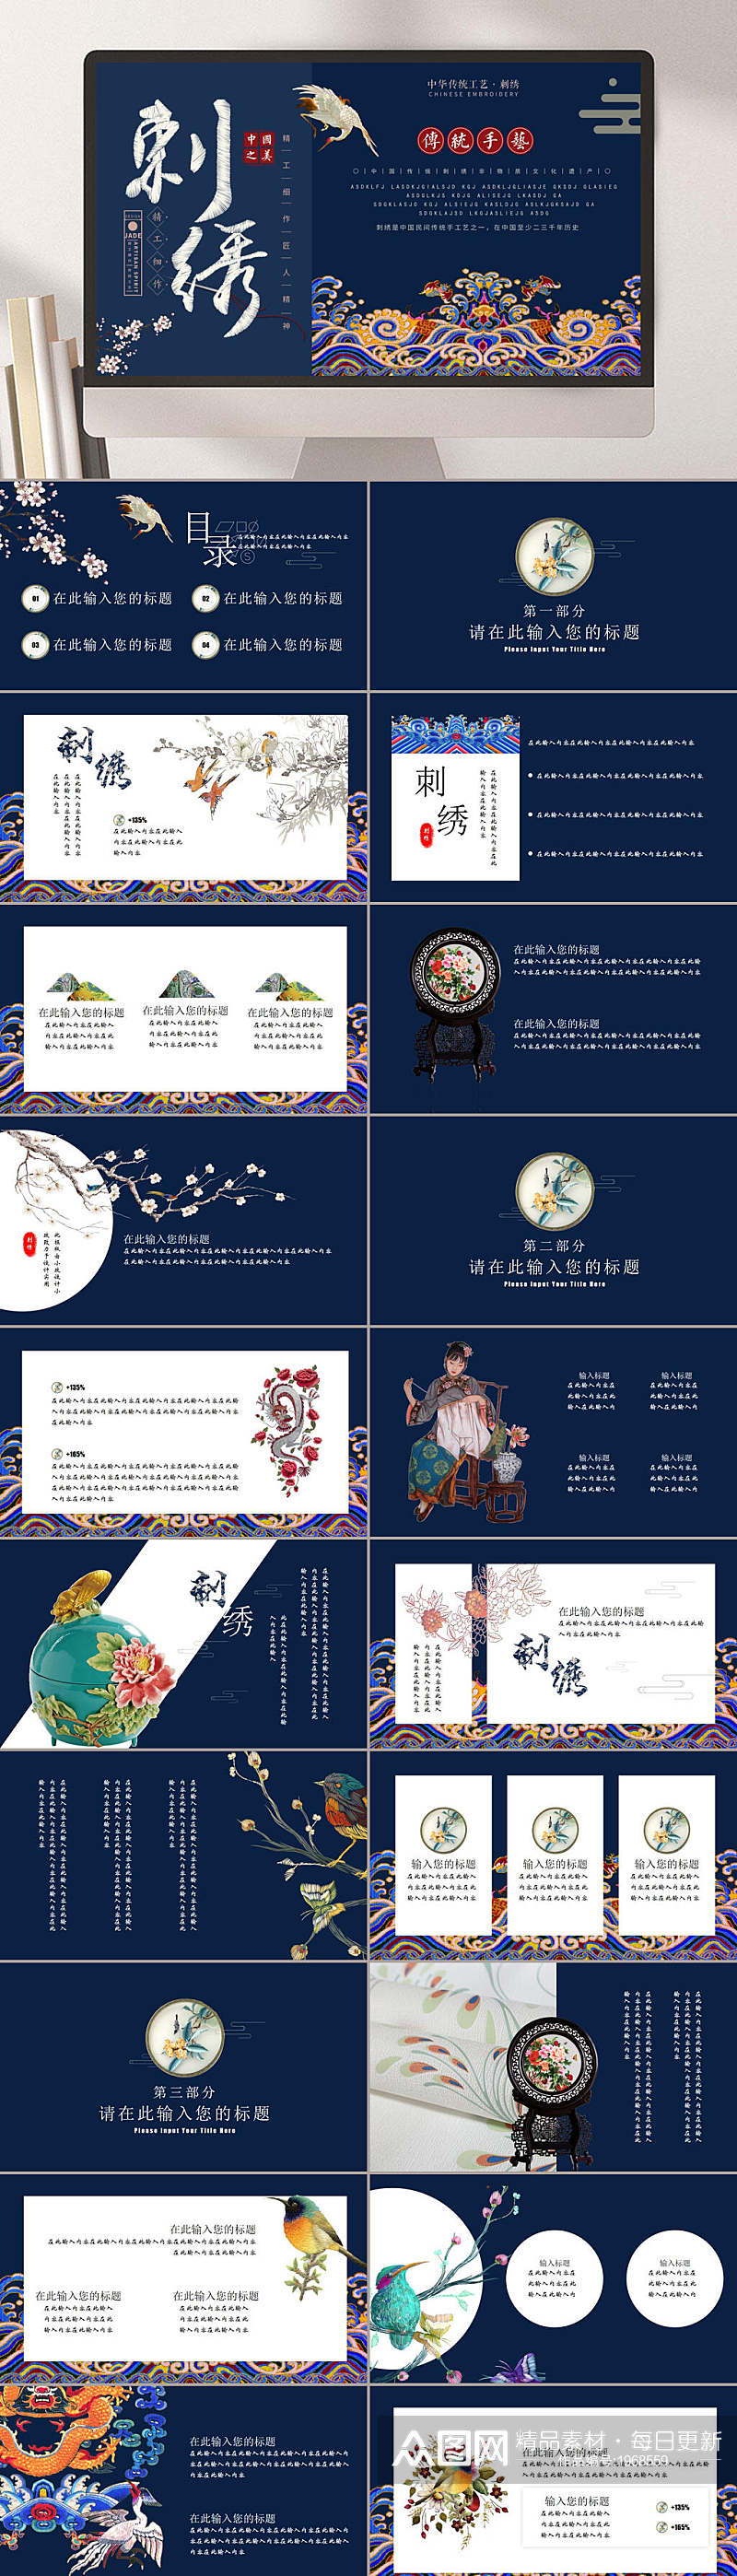 中国风传统工艺刺绣企业PPT素材